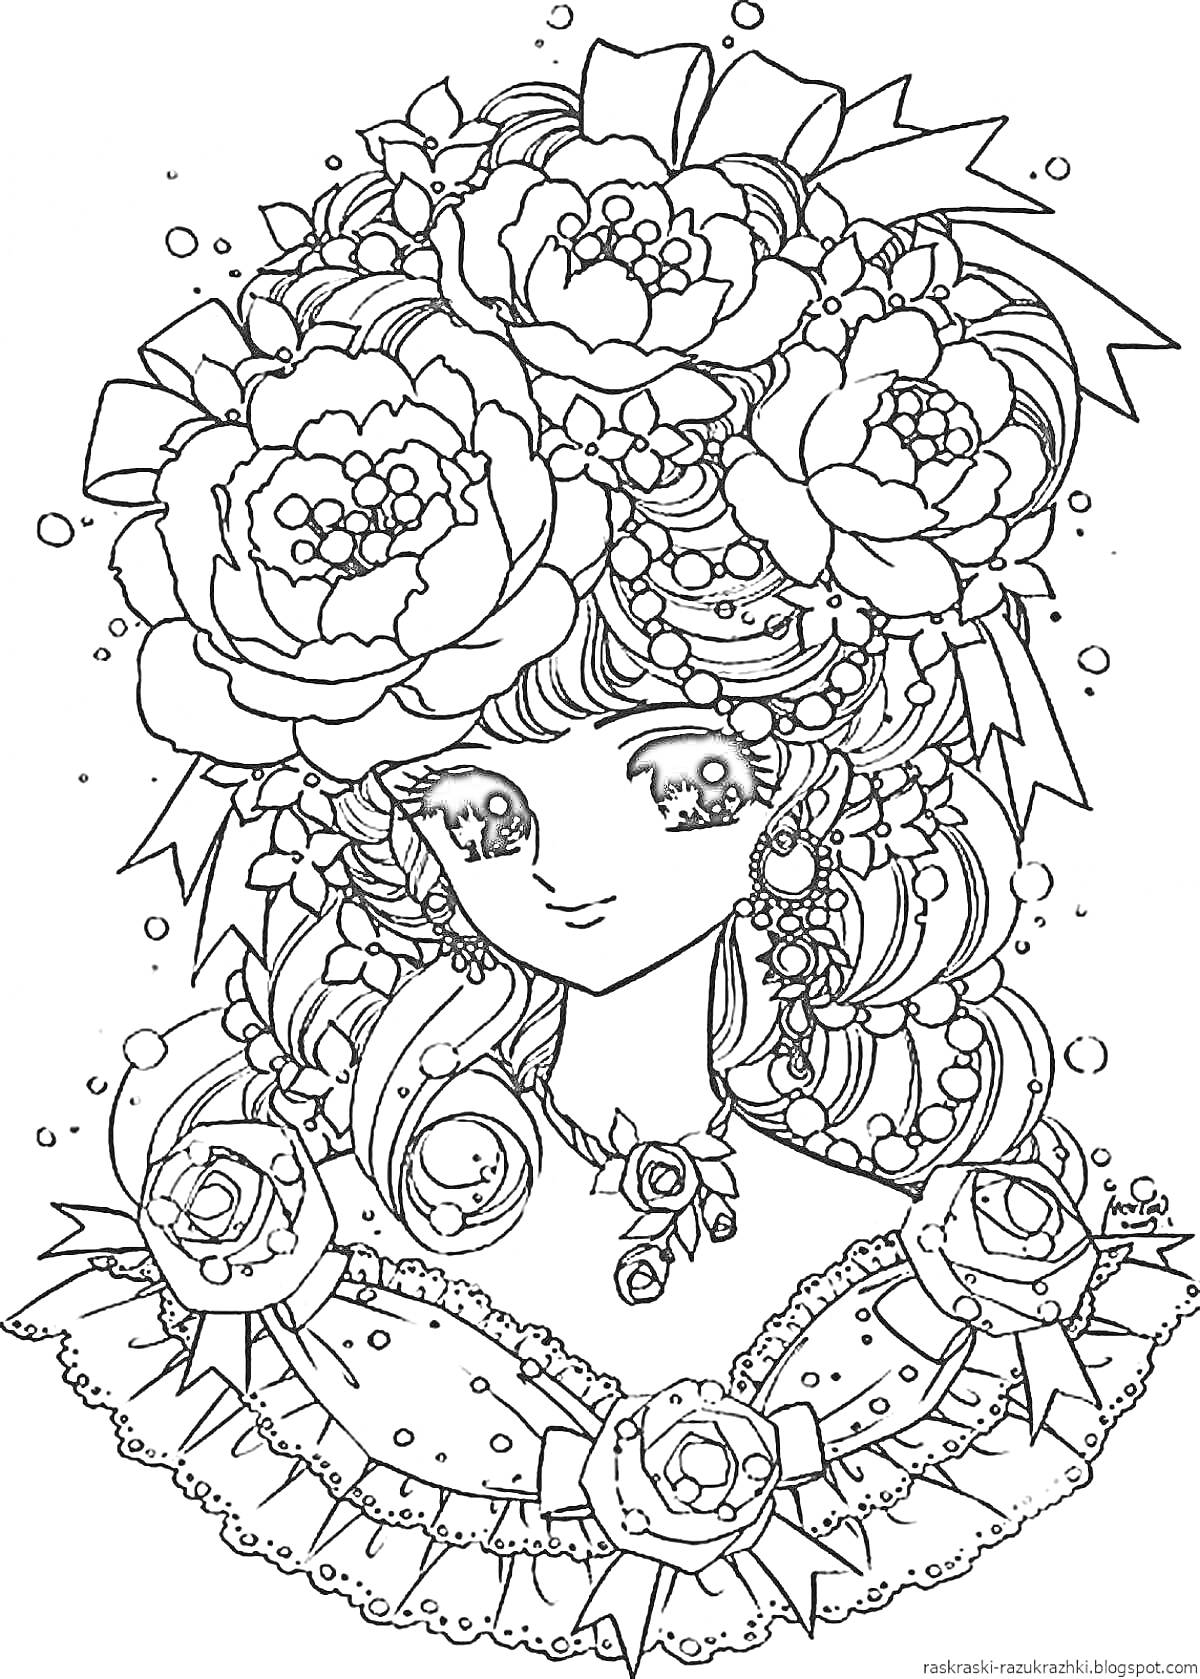 Девочка с крупными цветами в волосах, в наряде с бантиками и кружевом